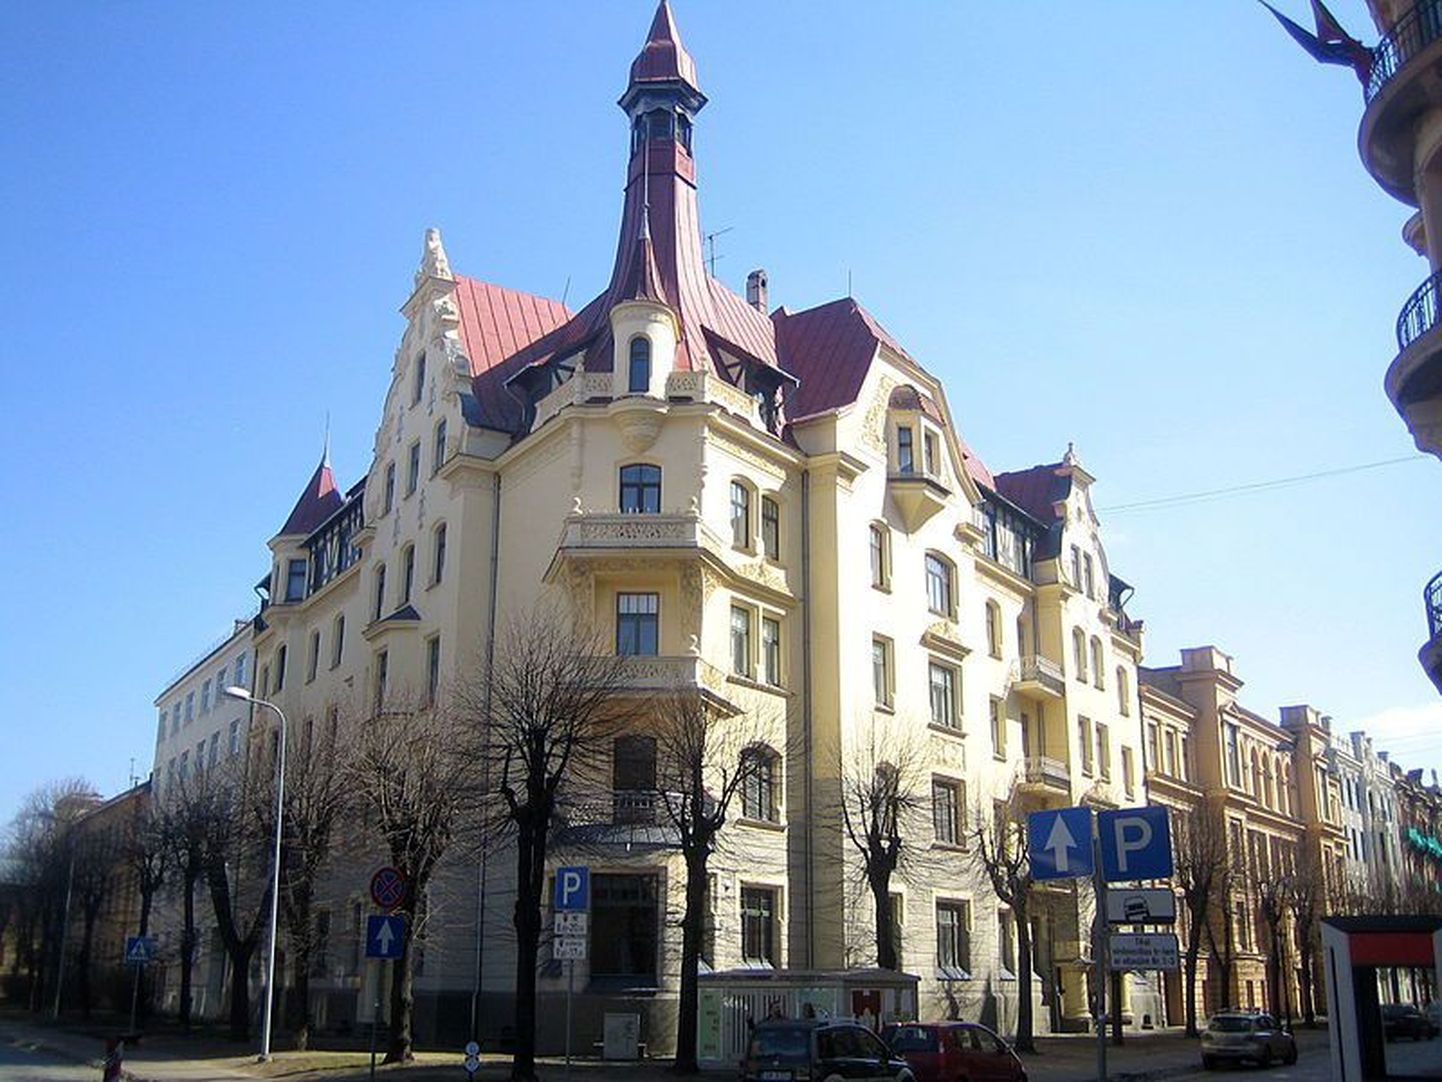 Дом, где находится Музей югендстиля, увенчан характерной для творчества Константина Пекшенса башенкой.